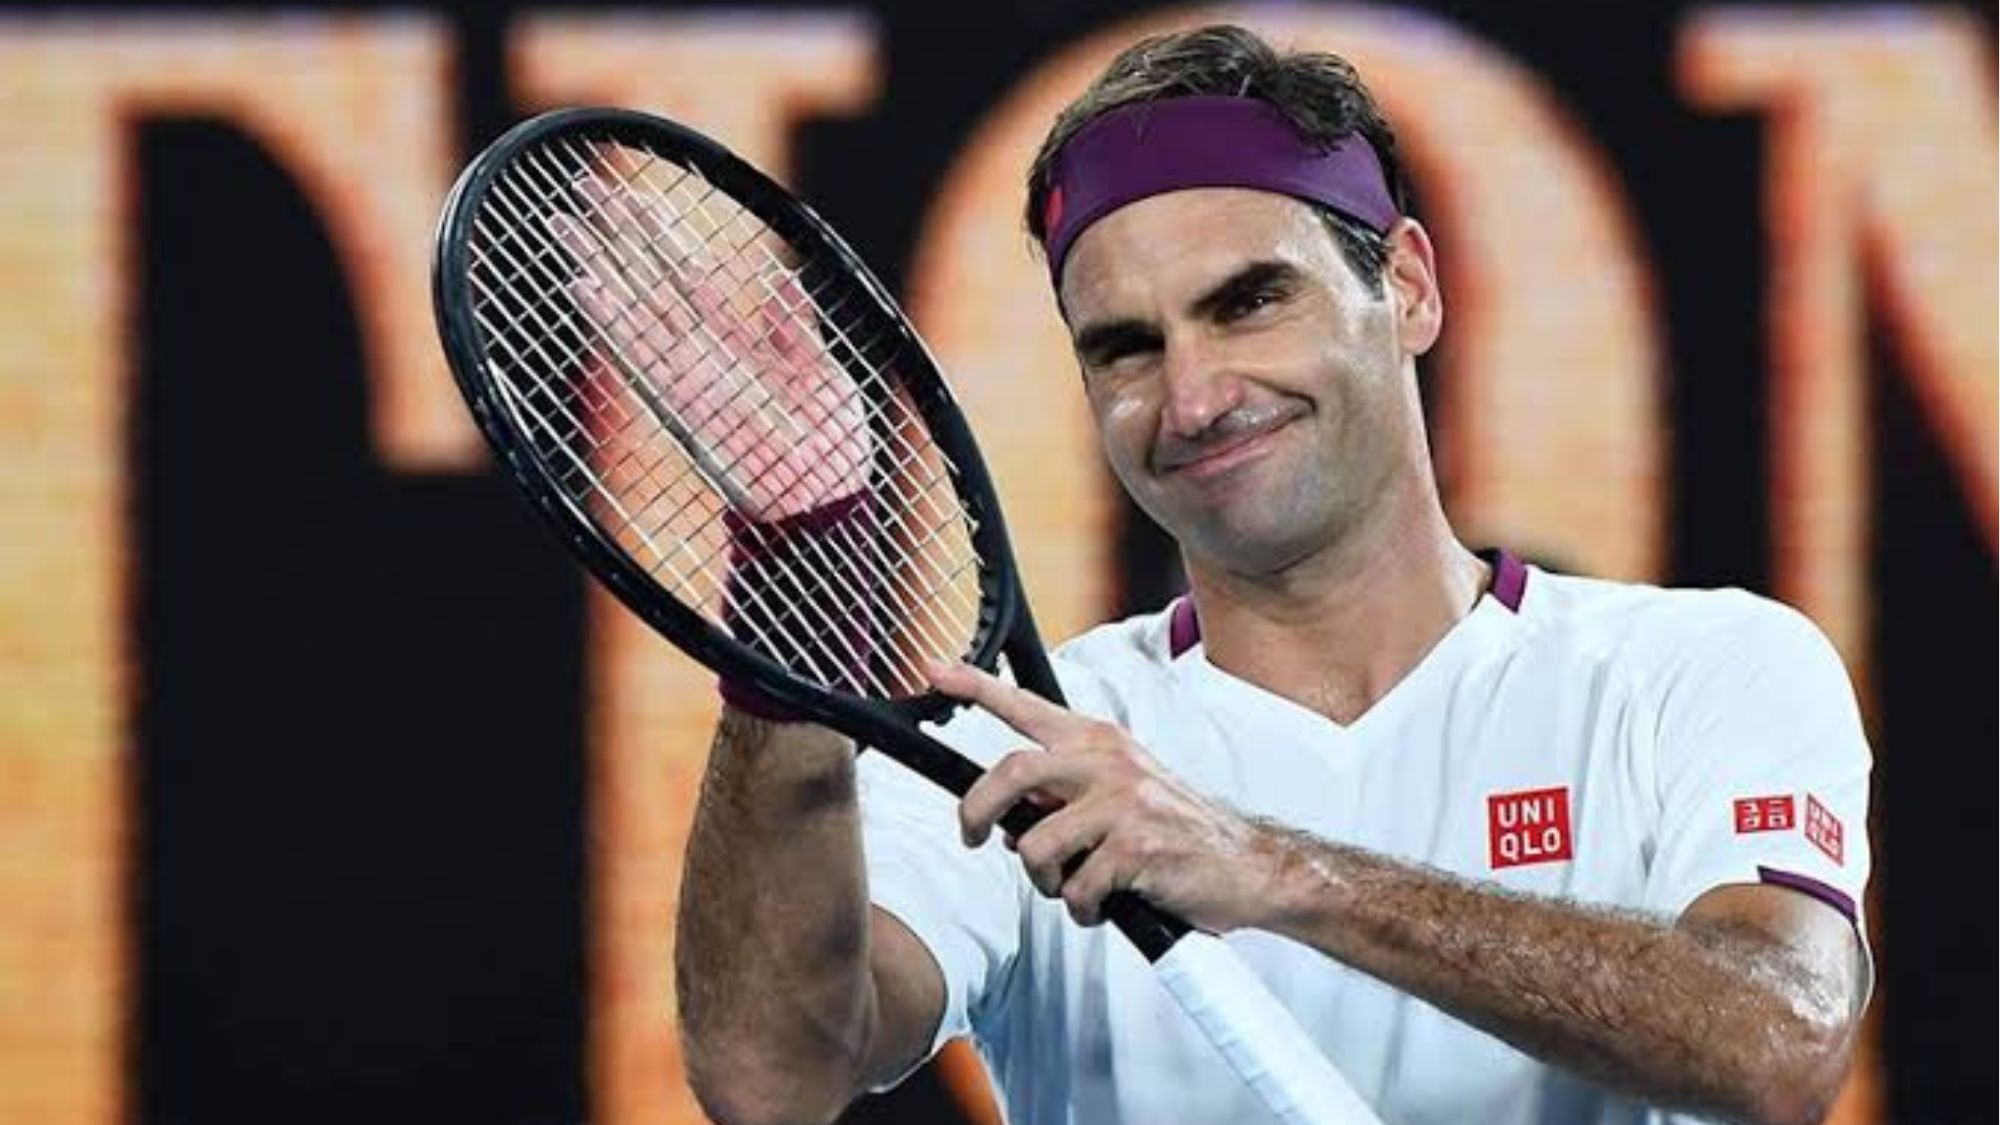 Tennis legend Roger Federer retires